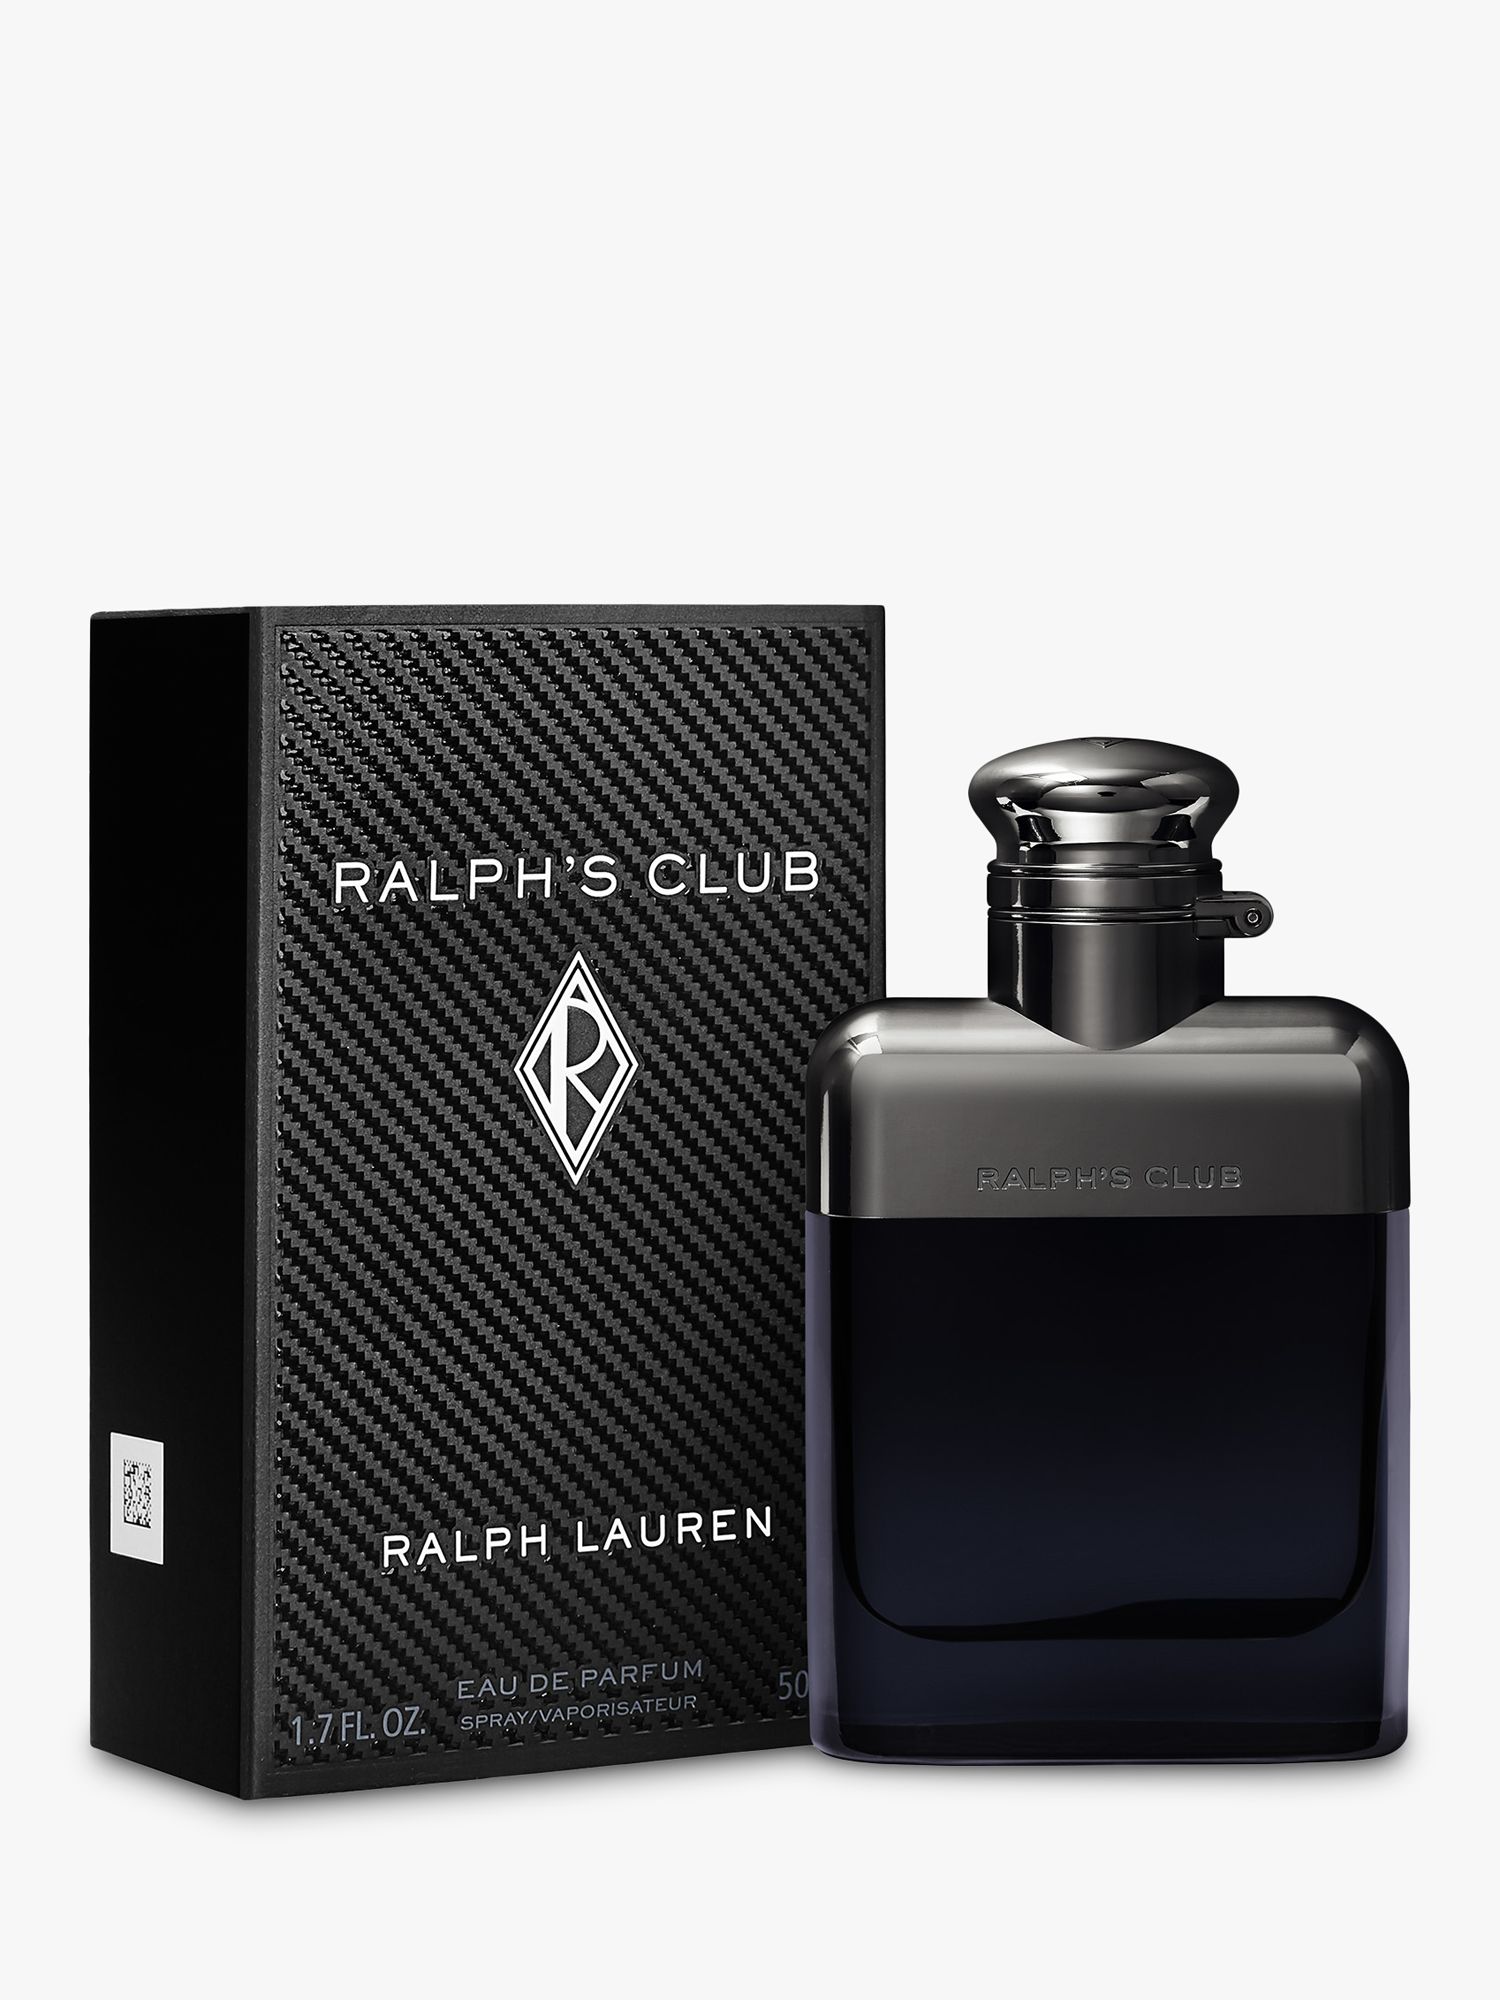 Ralph Lauren Ralph’s Club Eau de Parfum, 50ml 2